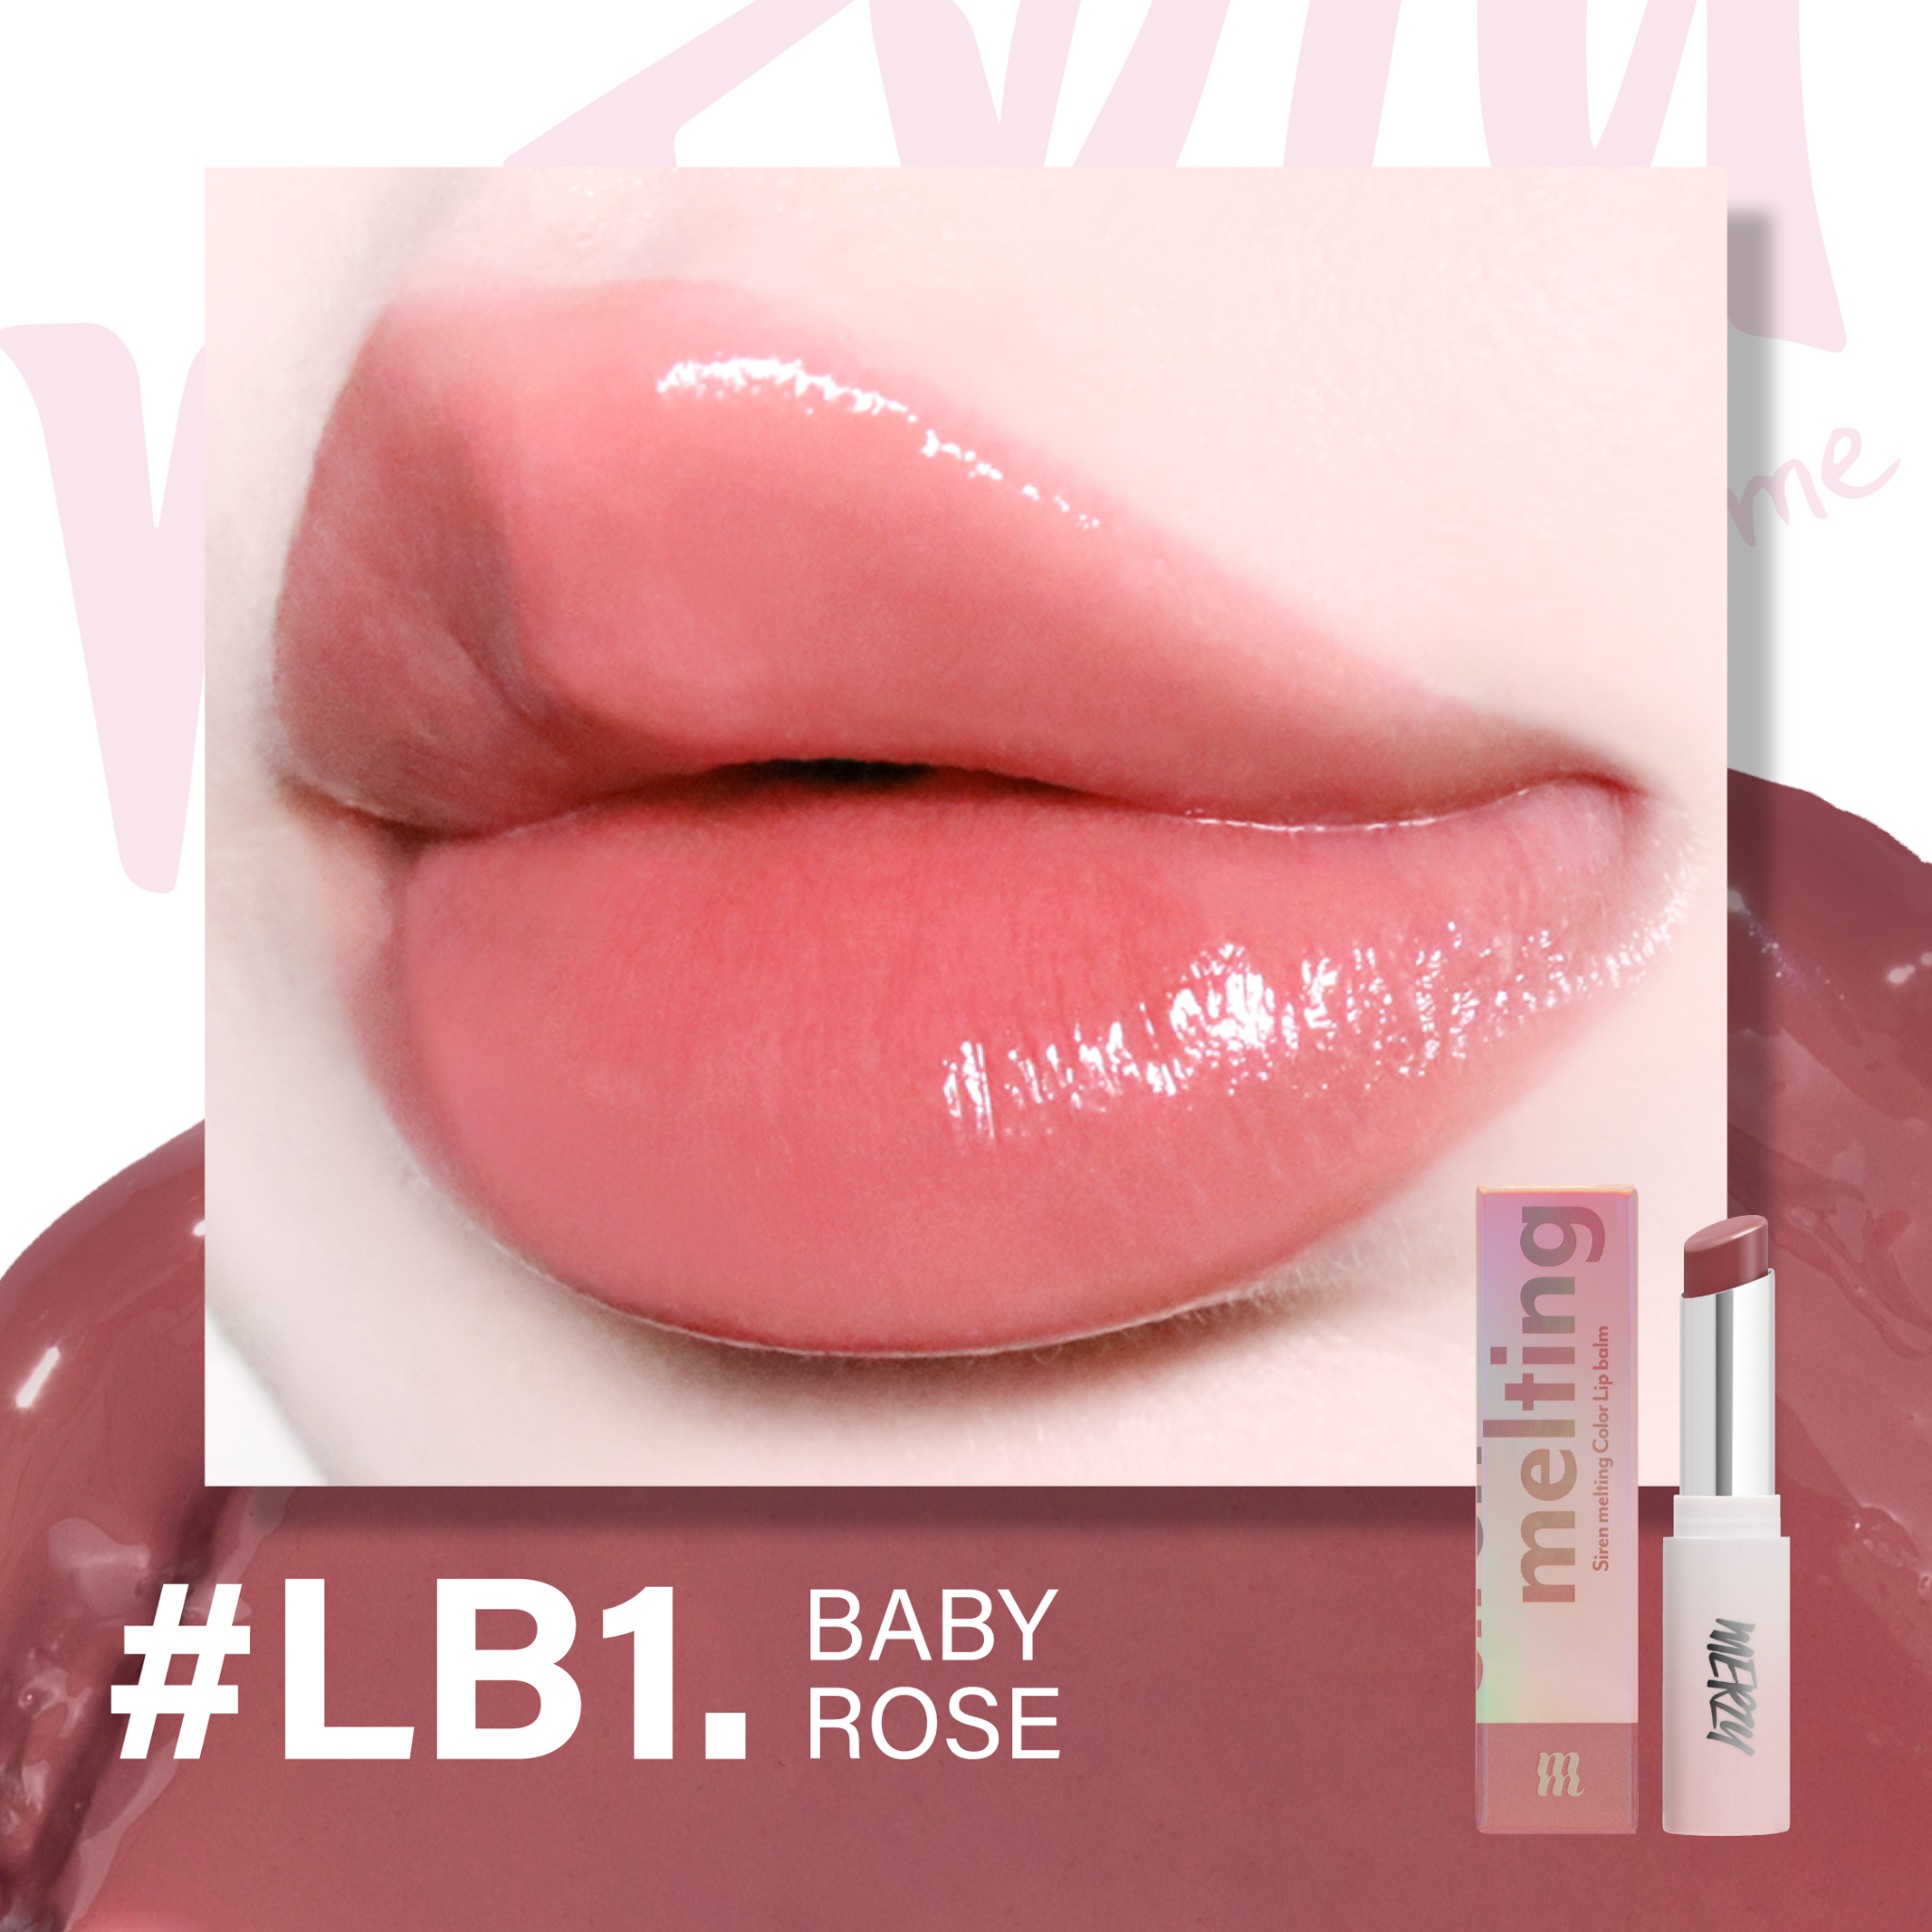 (New) Son Dưỡng Có Màu Merzy Siren Melting Color Lipbalm #LB1 Baby Rose